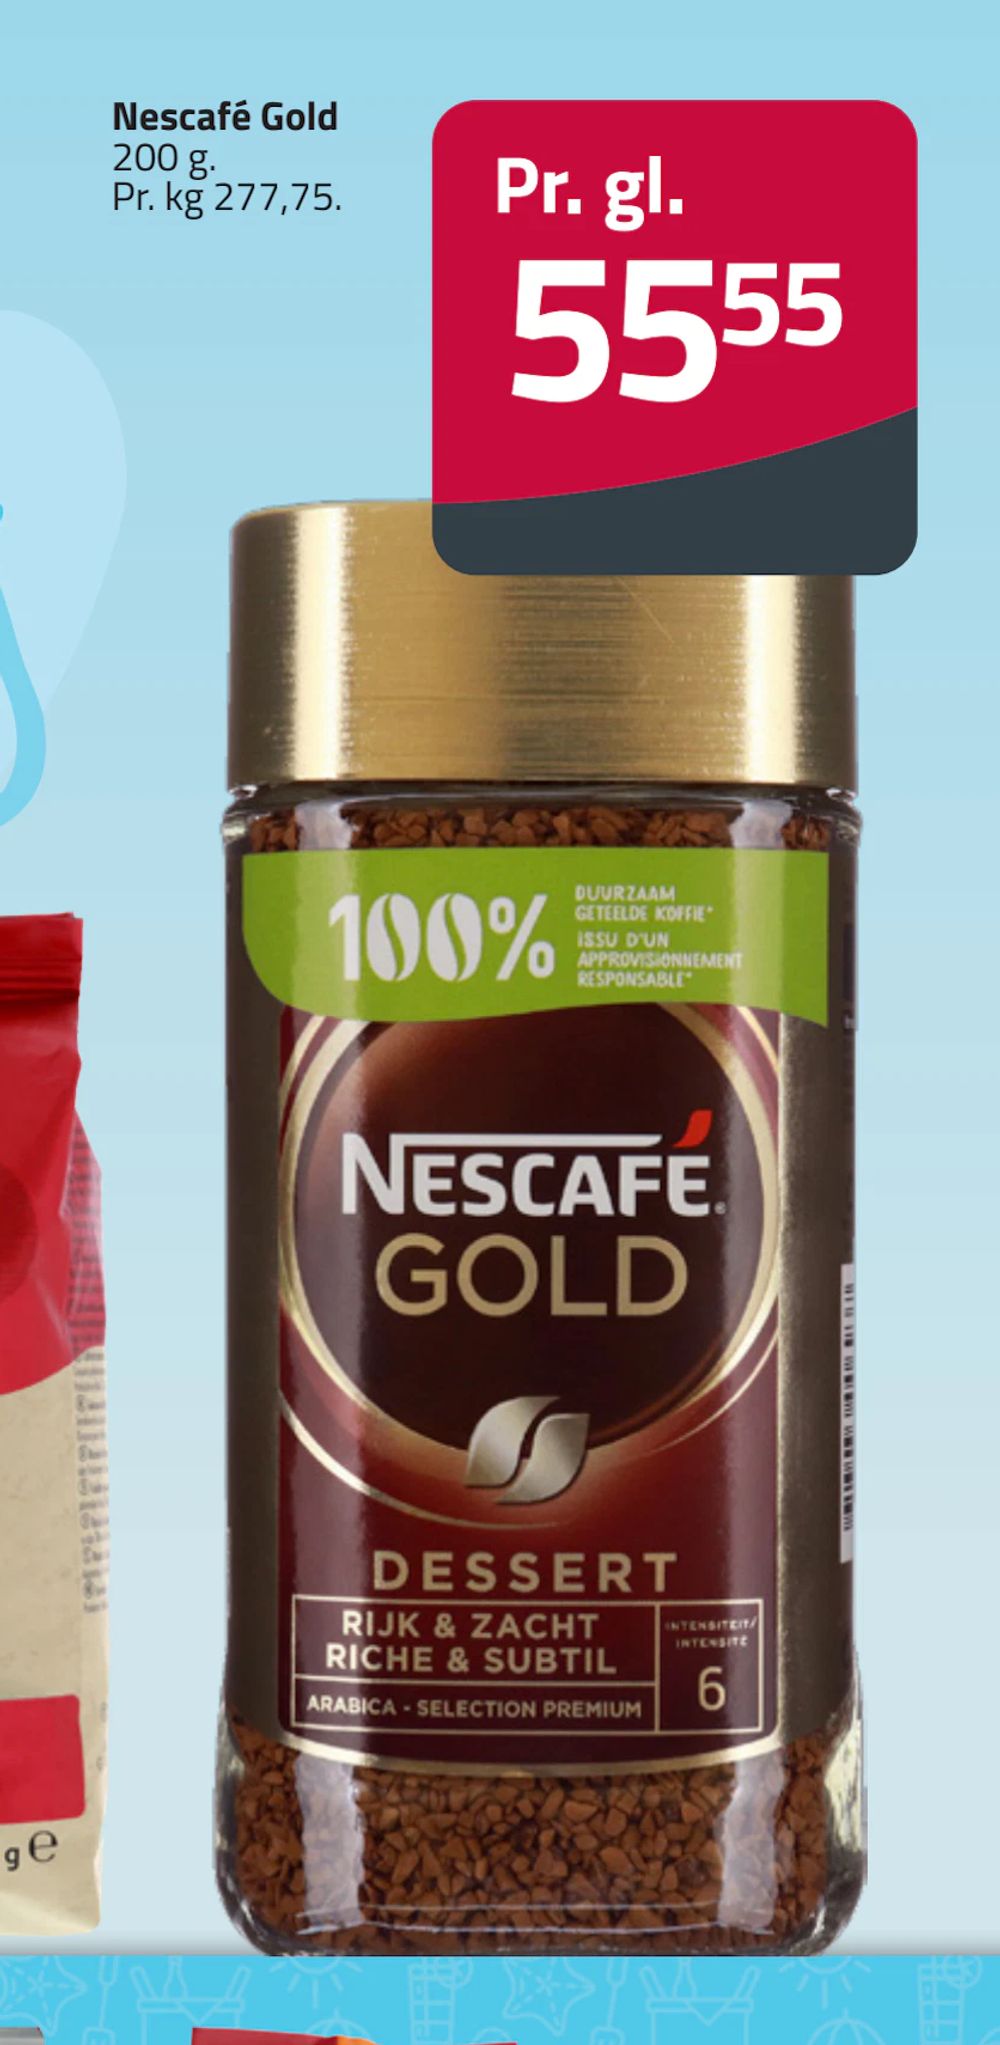 Tilbud på Nescafé Gold fra Fleggaard til 55,55 kr.